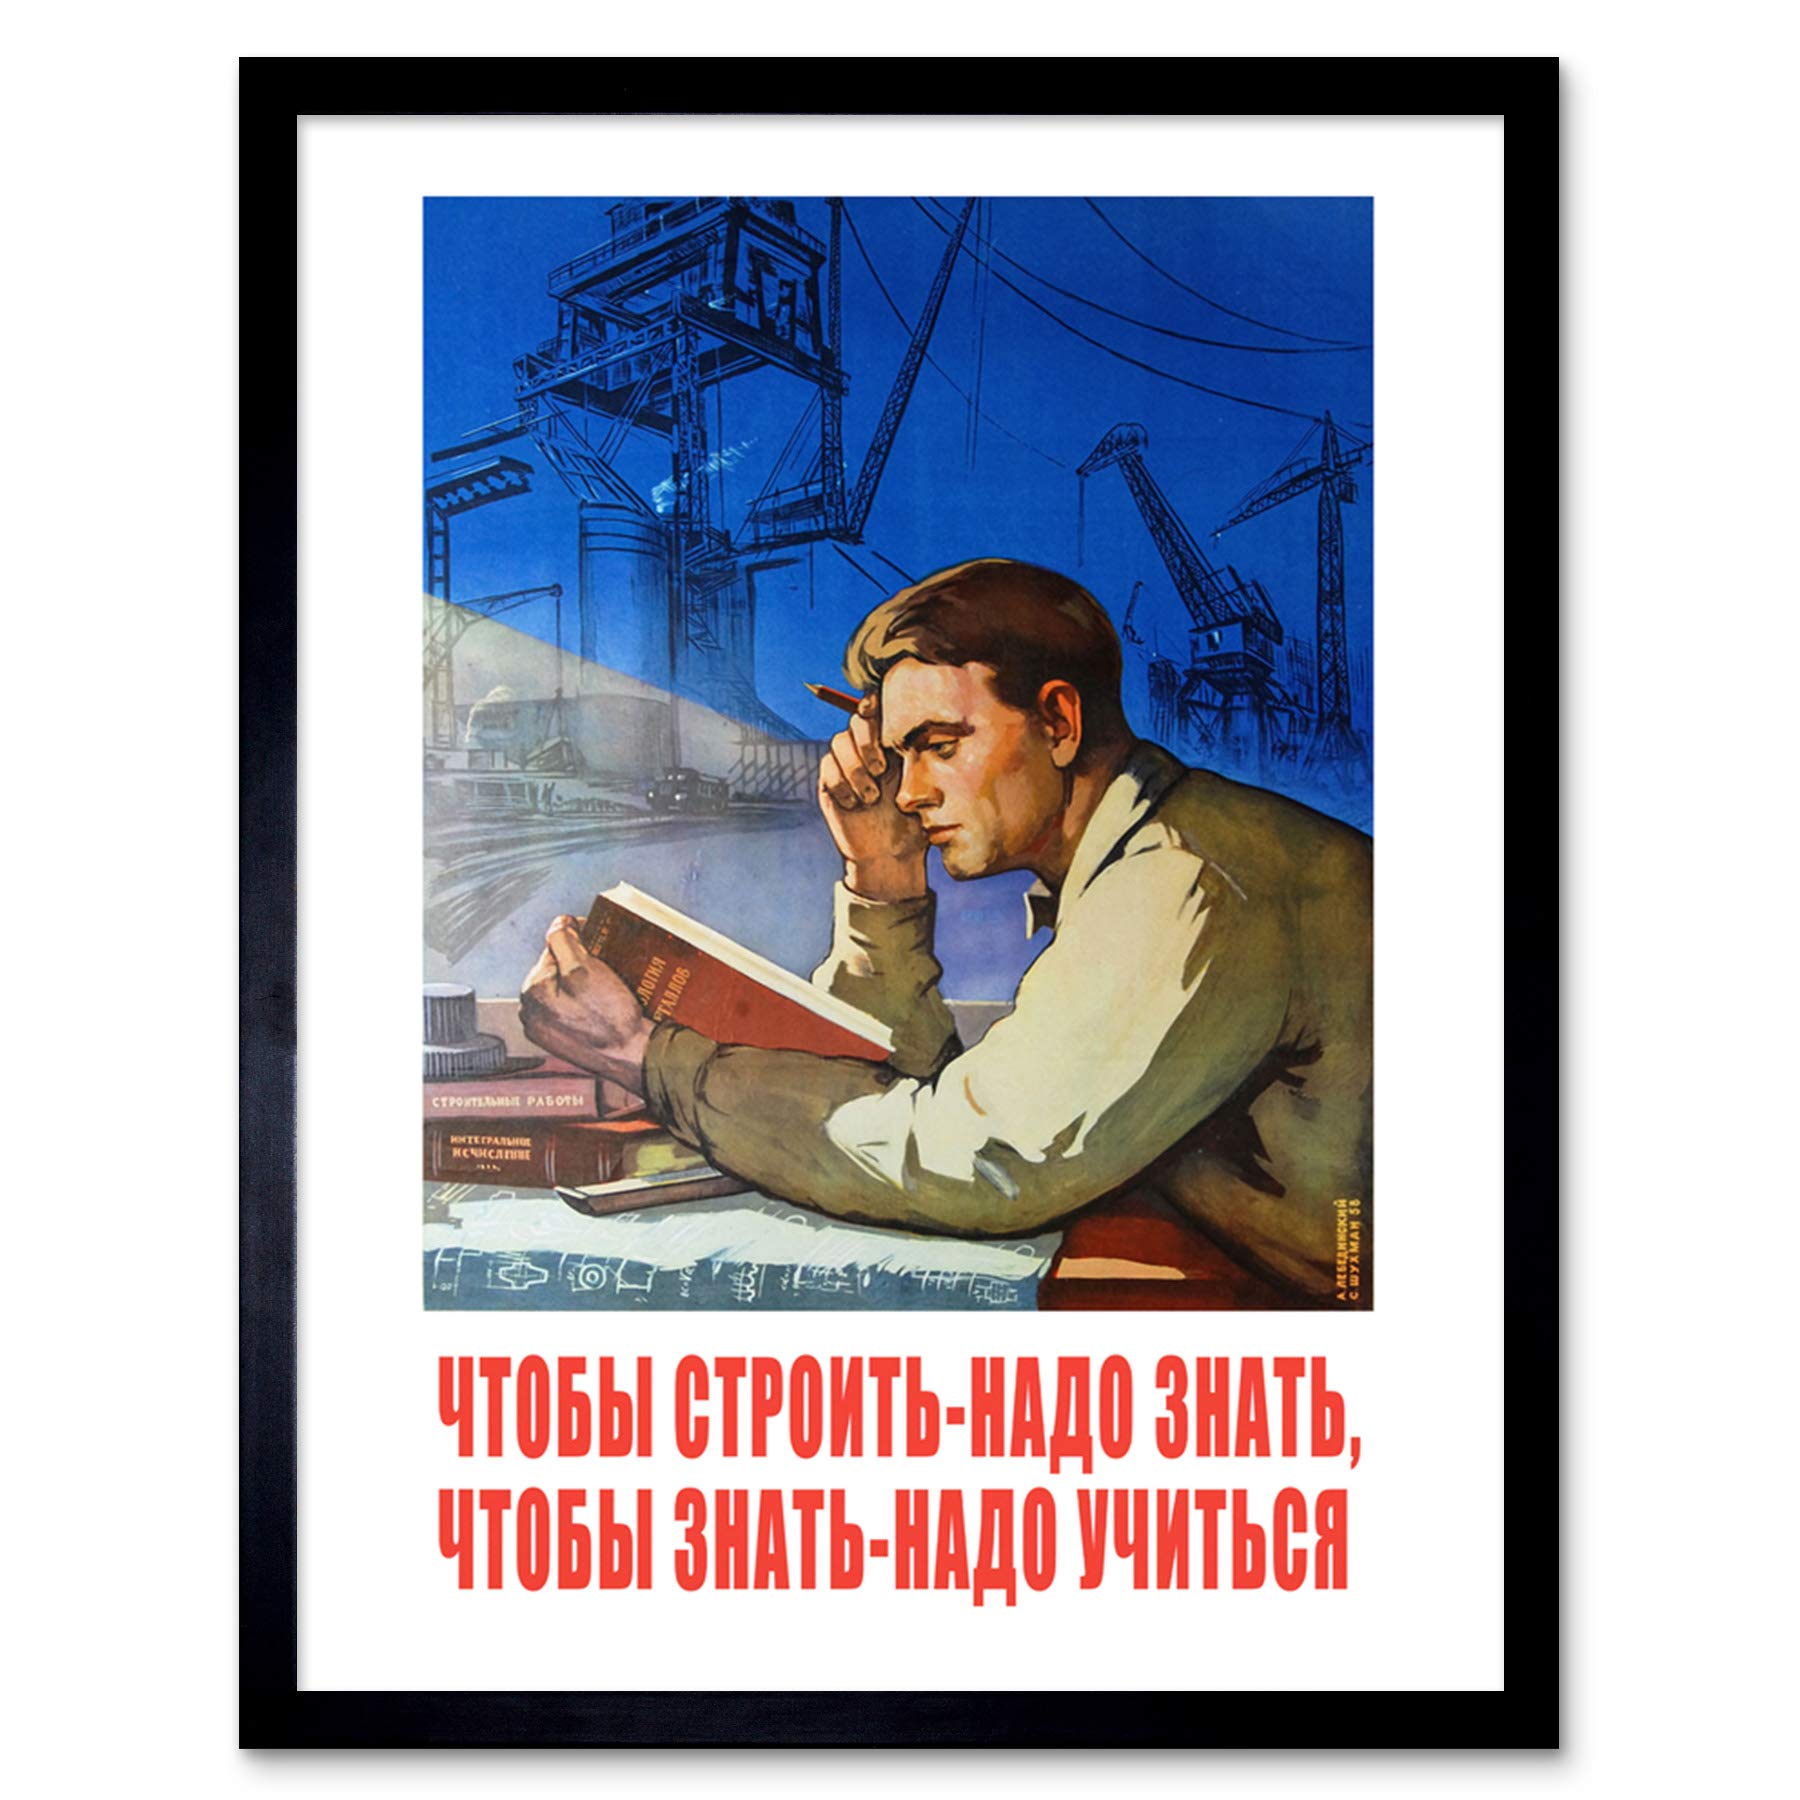 Shukhman 1958 Soviet Learning Ross Apartment Friends Art Print Framed Poster Wall Decor 12x16 inch Sowjetisch Wand Deko